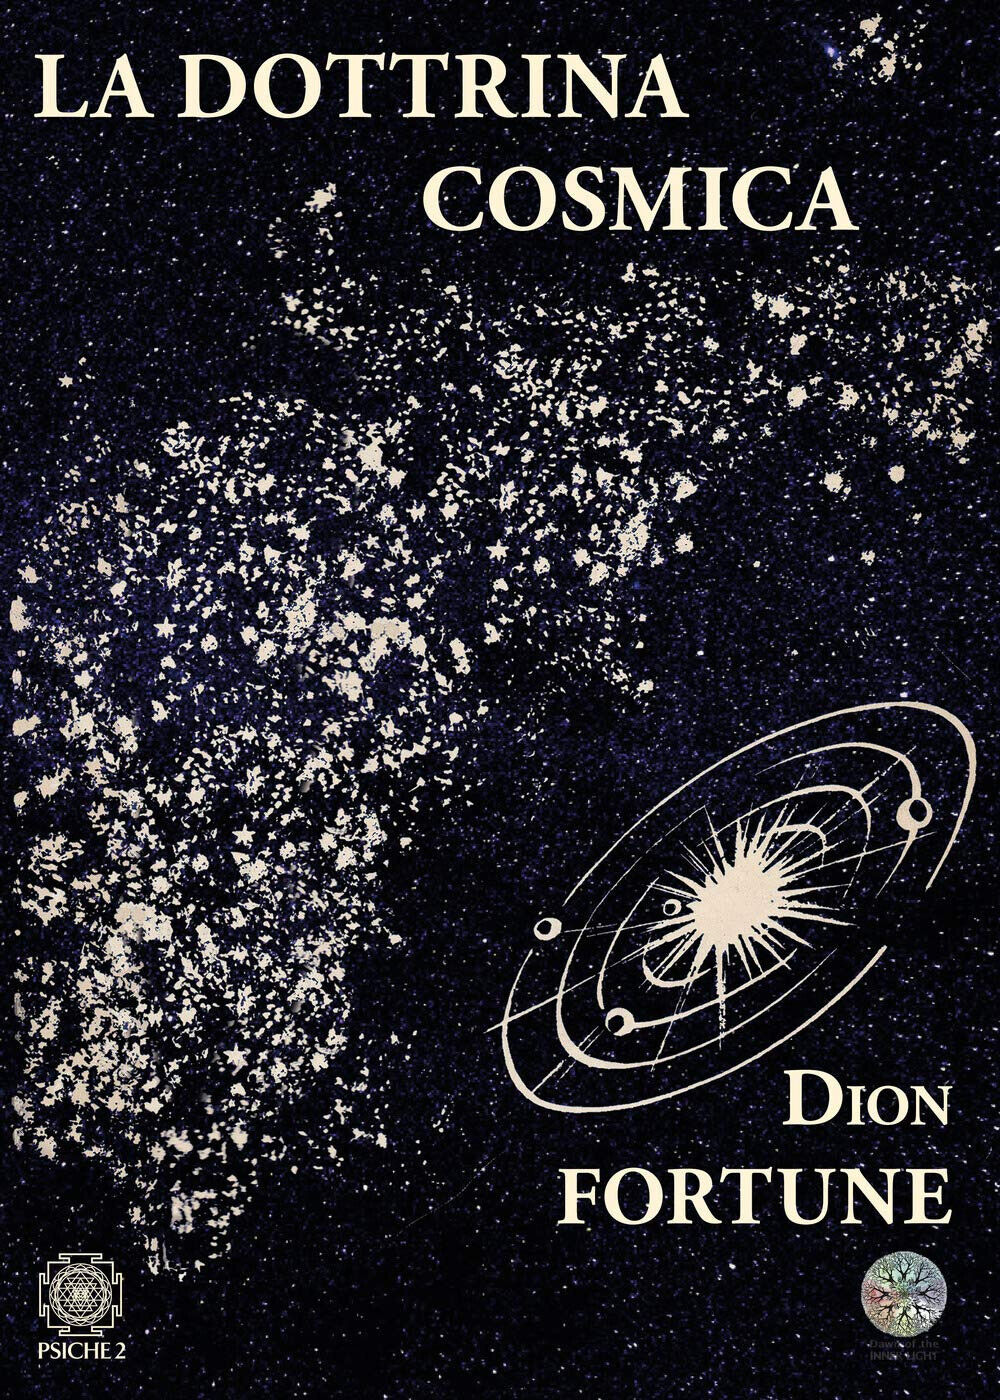 La dottrina cosmica - Dion Fortune - Psiche 2, 2020